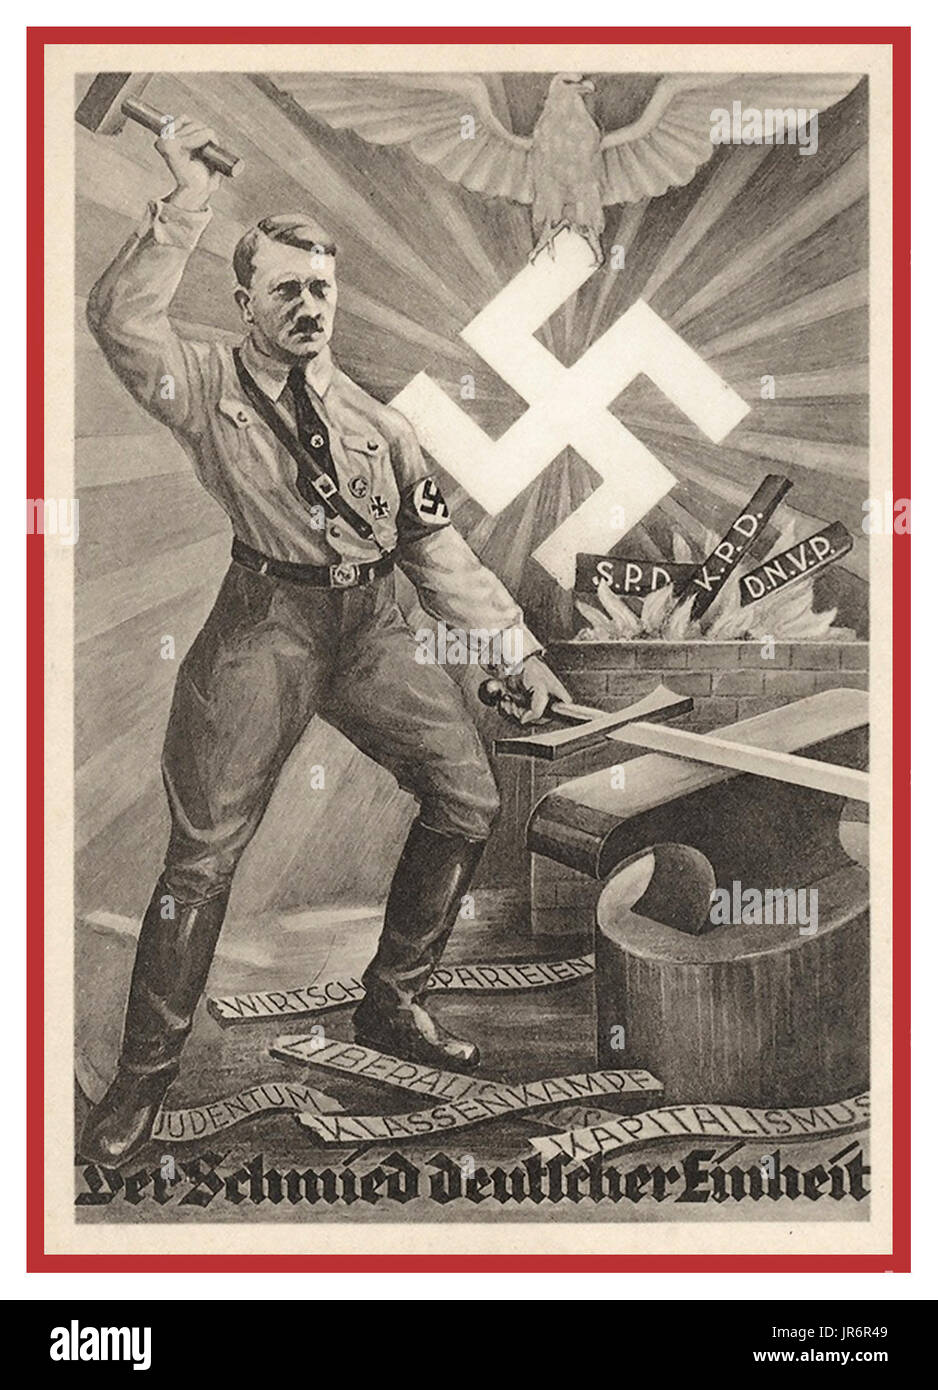 1930er Jahre Nazi-Propaganda-Plakat/Postkarte mit Adolf Hitler als der "Nation's Blacksmith" Schmieden eines neuen vereinigten Staates, eine politische Parteilösung, mit glühendem Swastika-Emblem hinter...Nazismus Symbolismus Propaganda Stockfoto